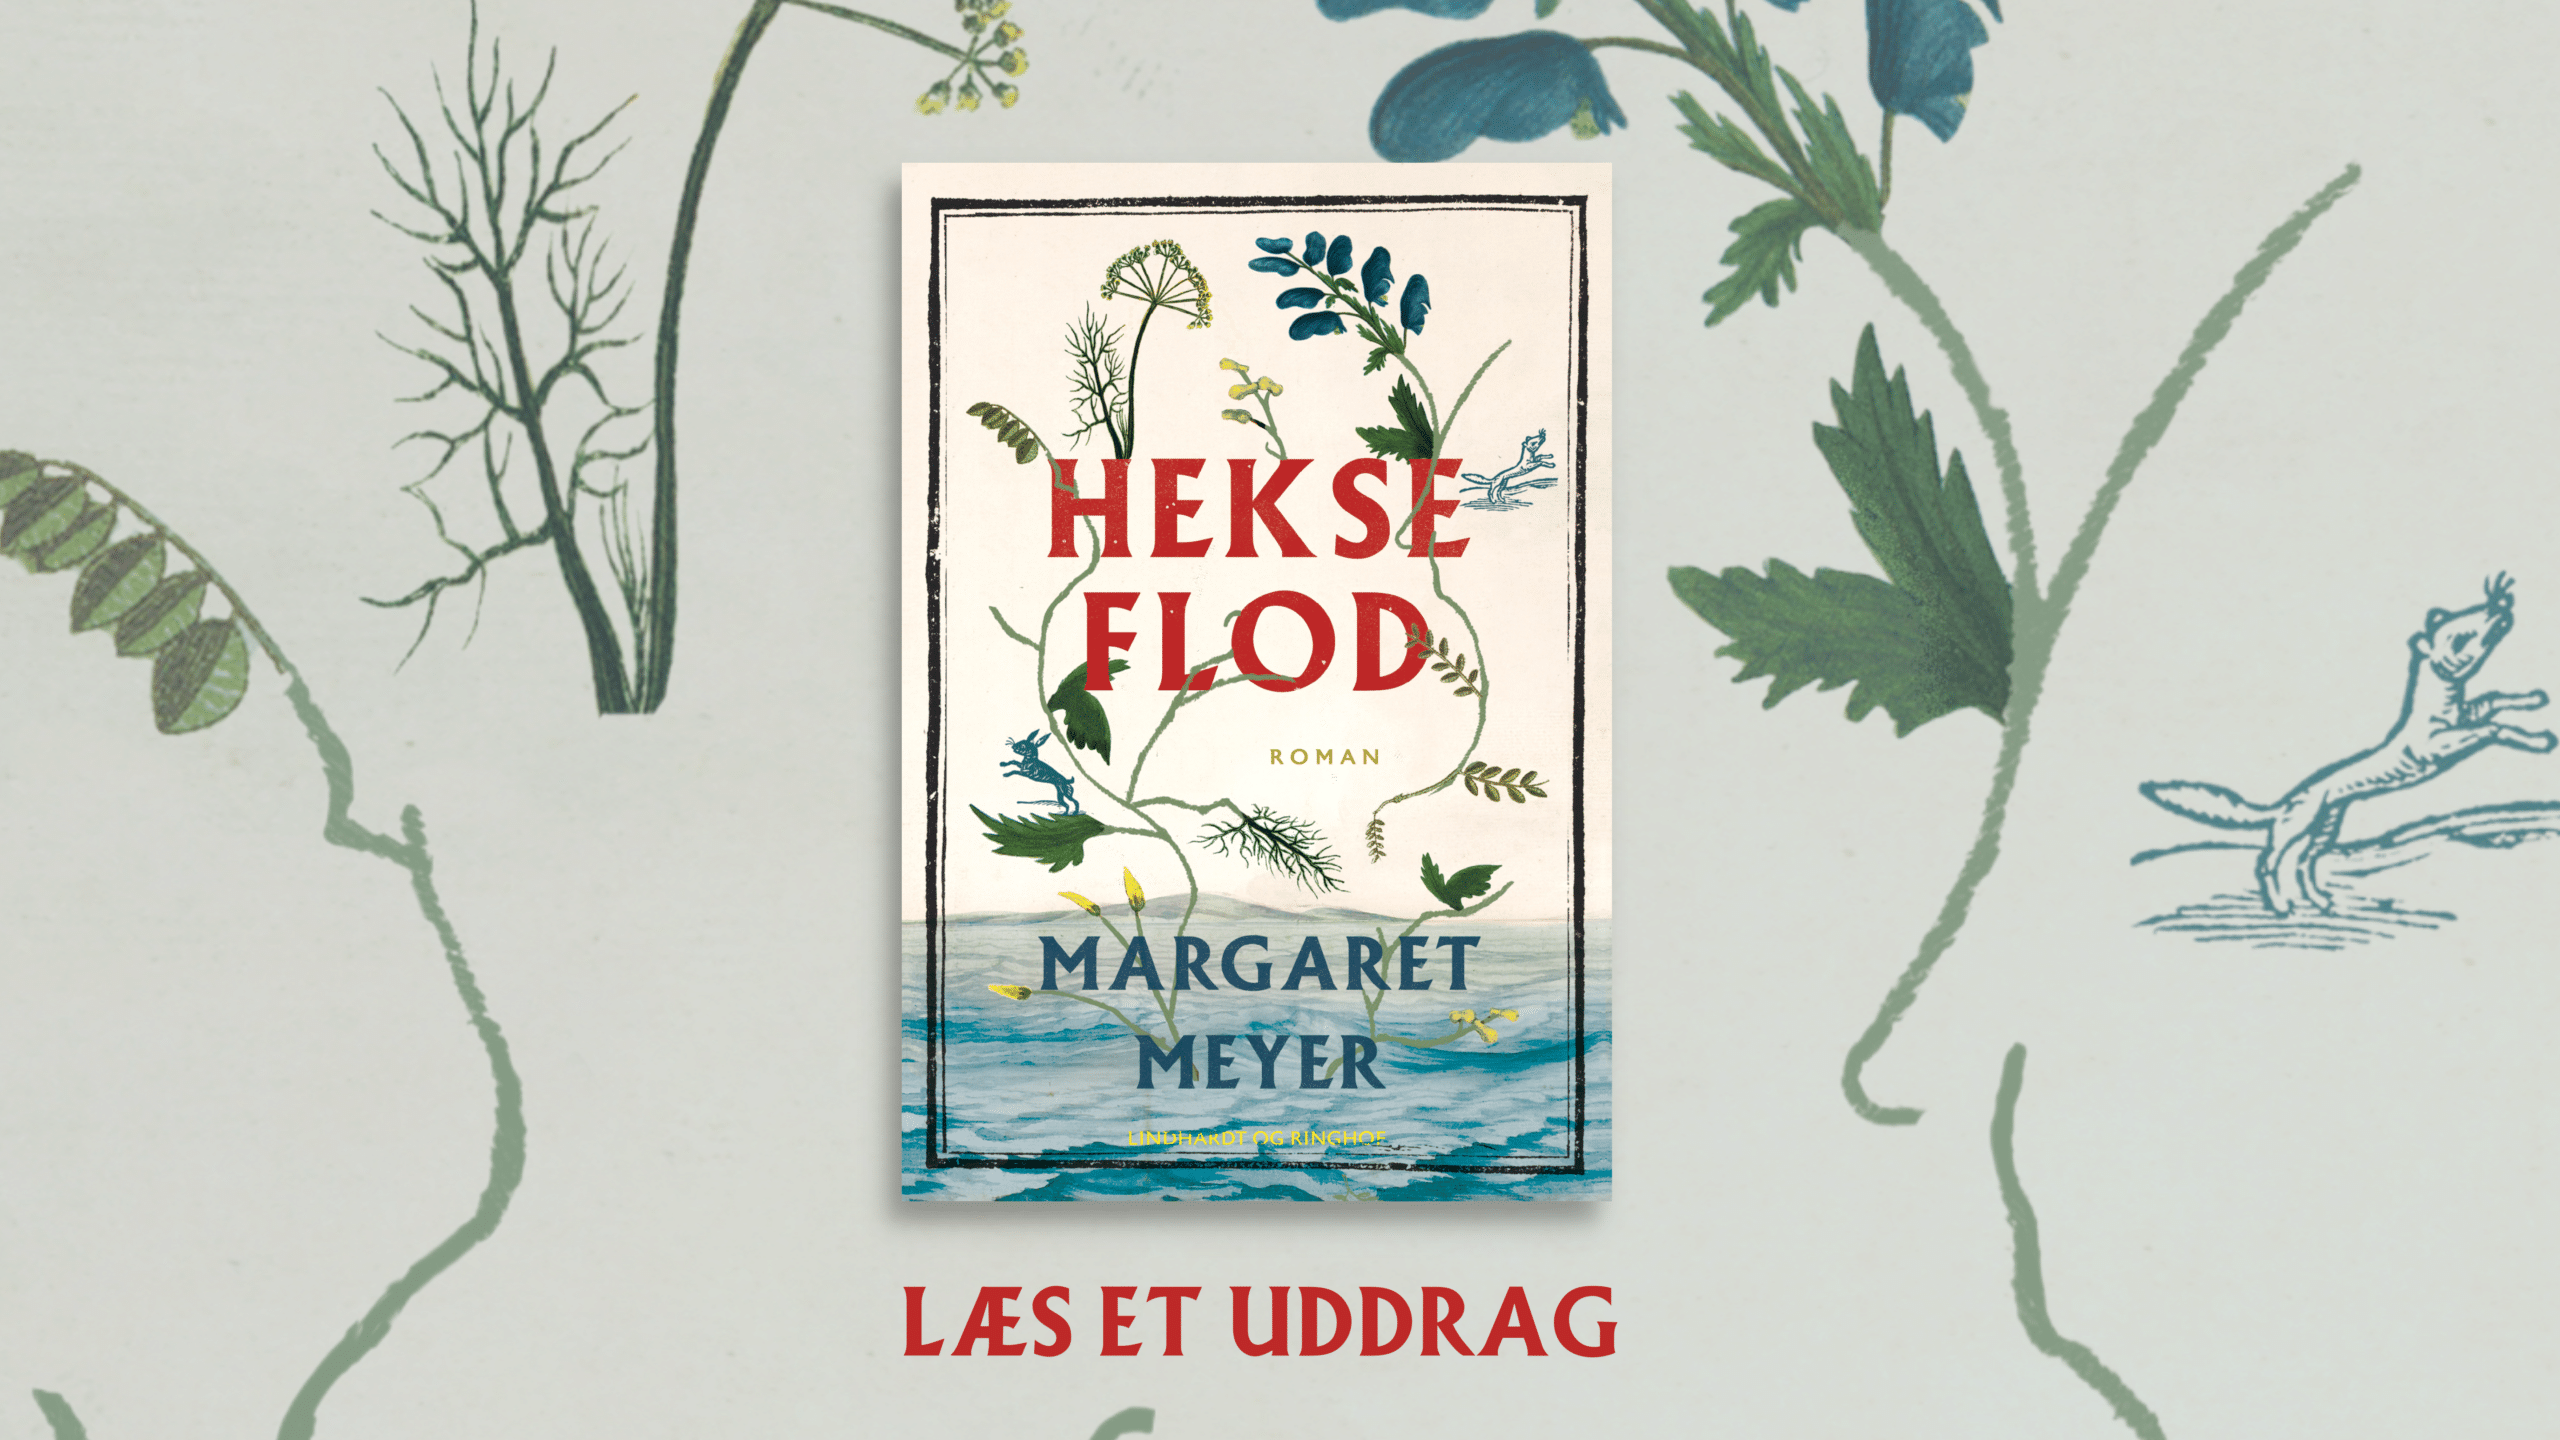 Hekseflod er Margaret Meyers utrolige debutroman om hekses skæbner i 1600-tallet. Læs i bogen her